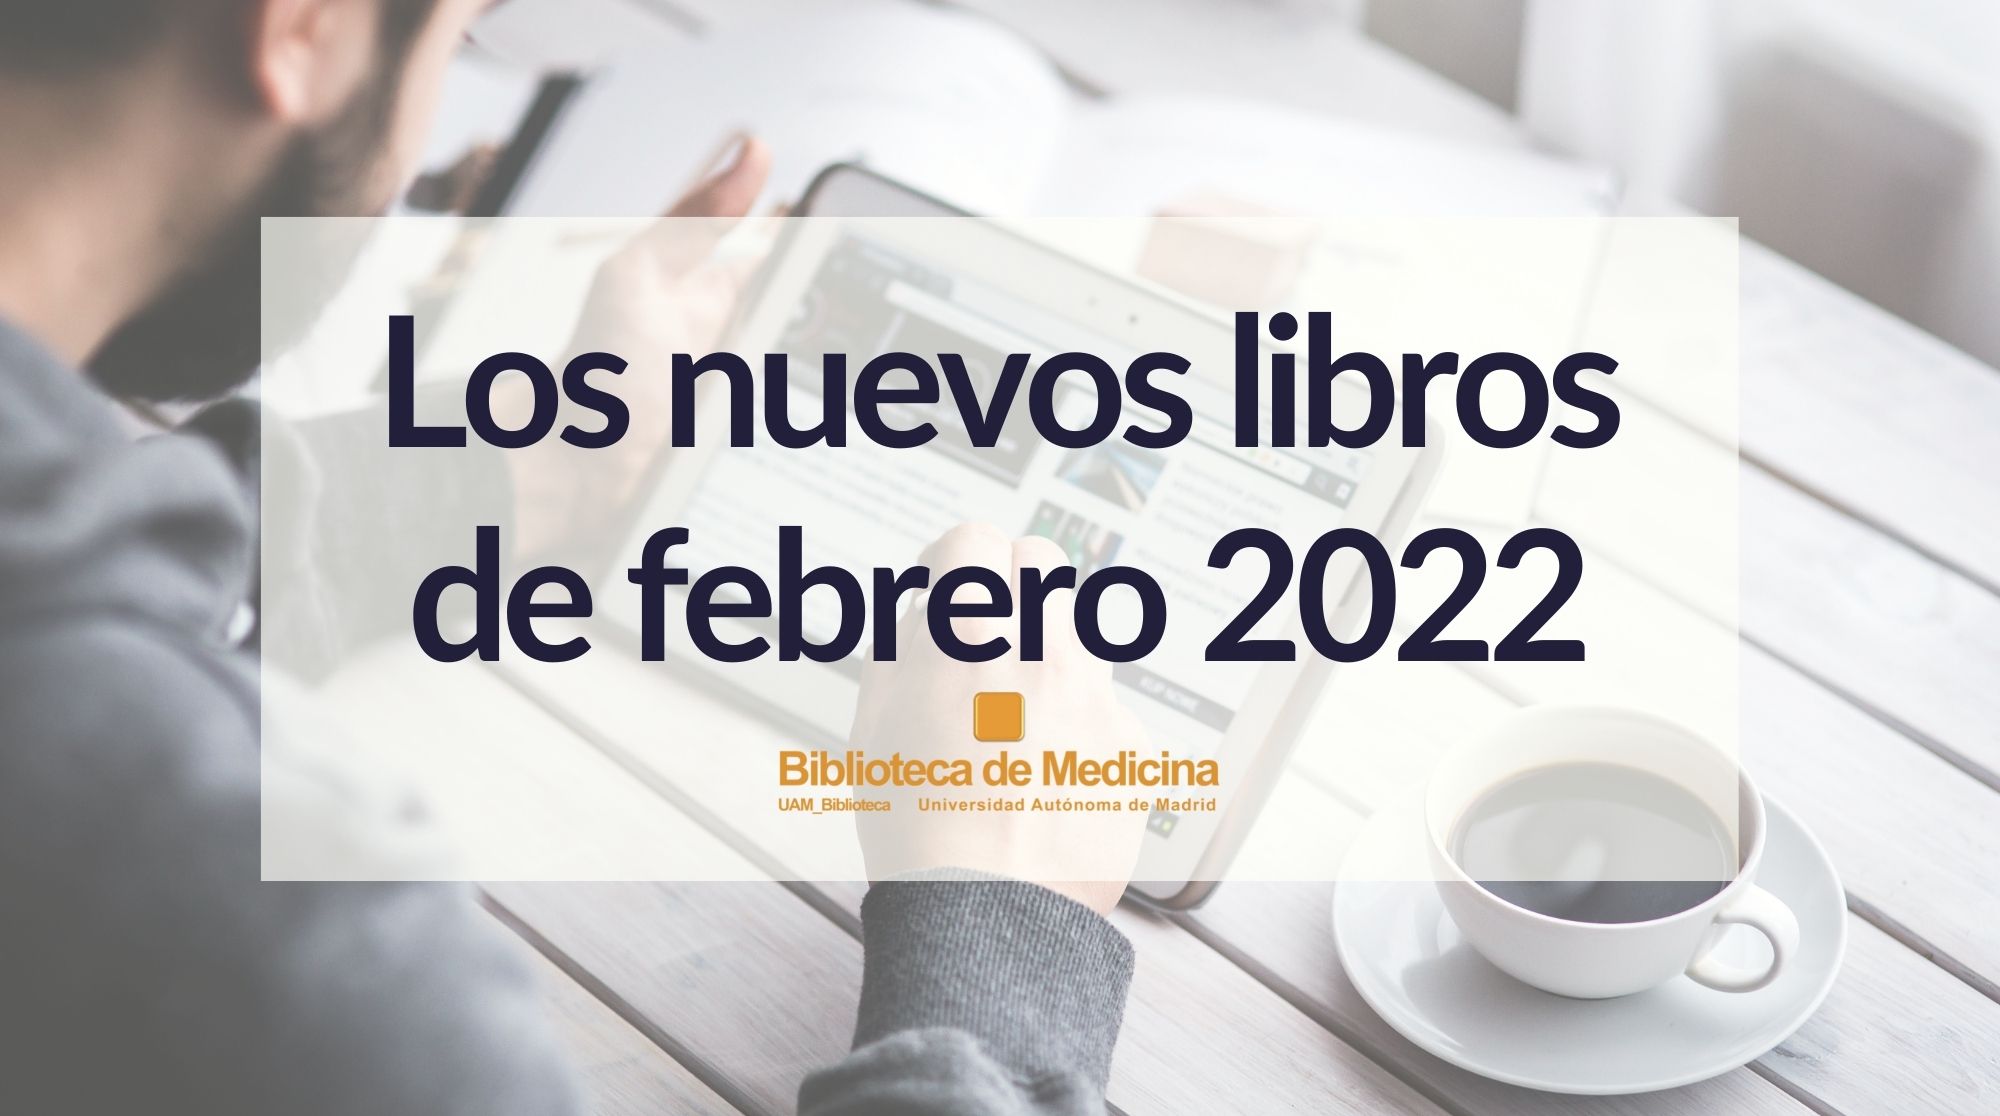 Novedades bibliográficas de febrero de 2022 en la Biblioteca de Medicina de la UAM